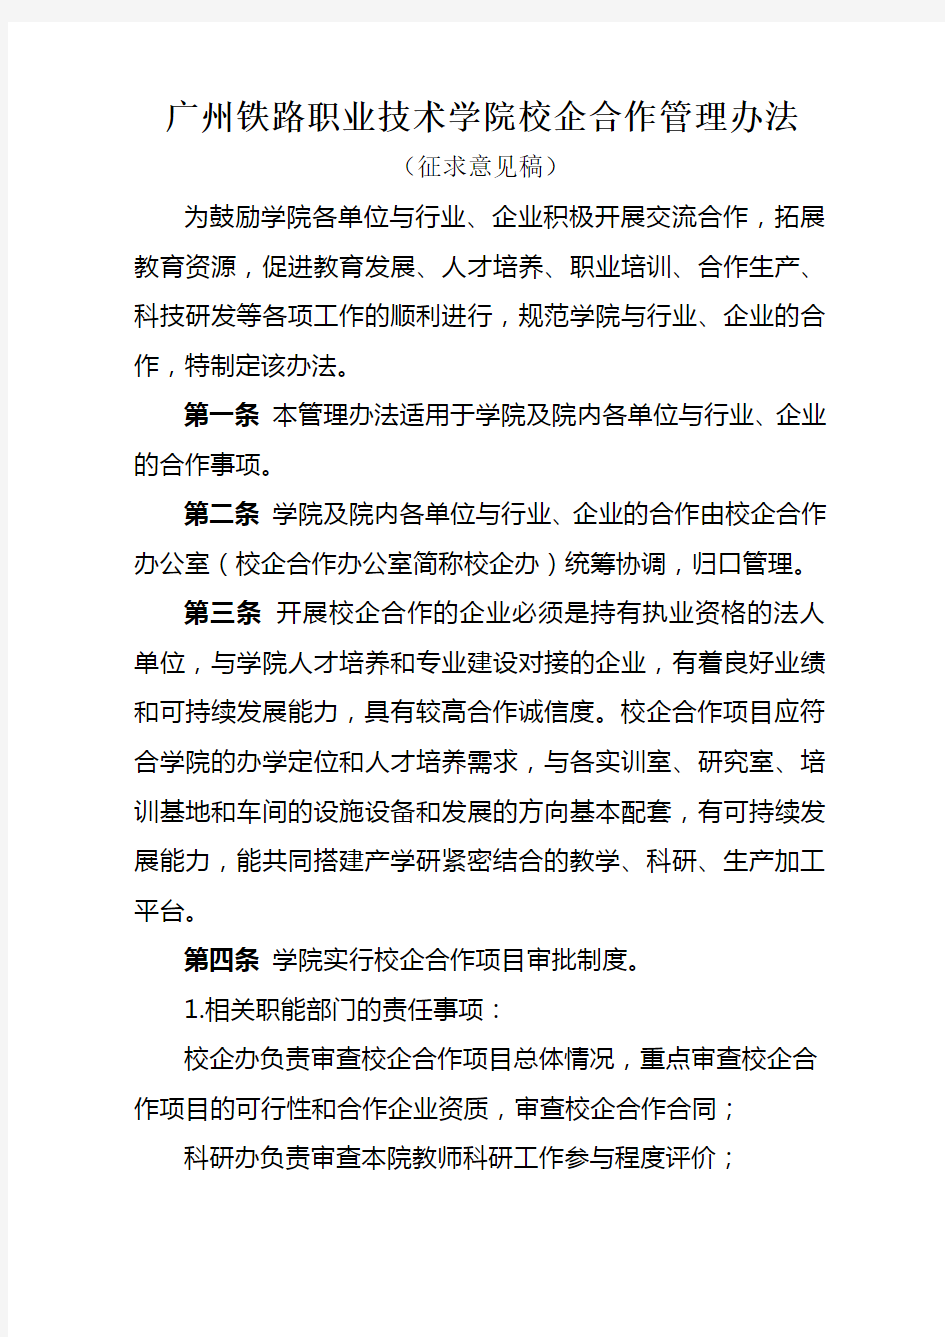 (完整版)广州铁路职业技术学院校企合作管理办法